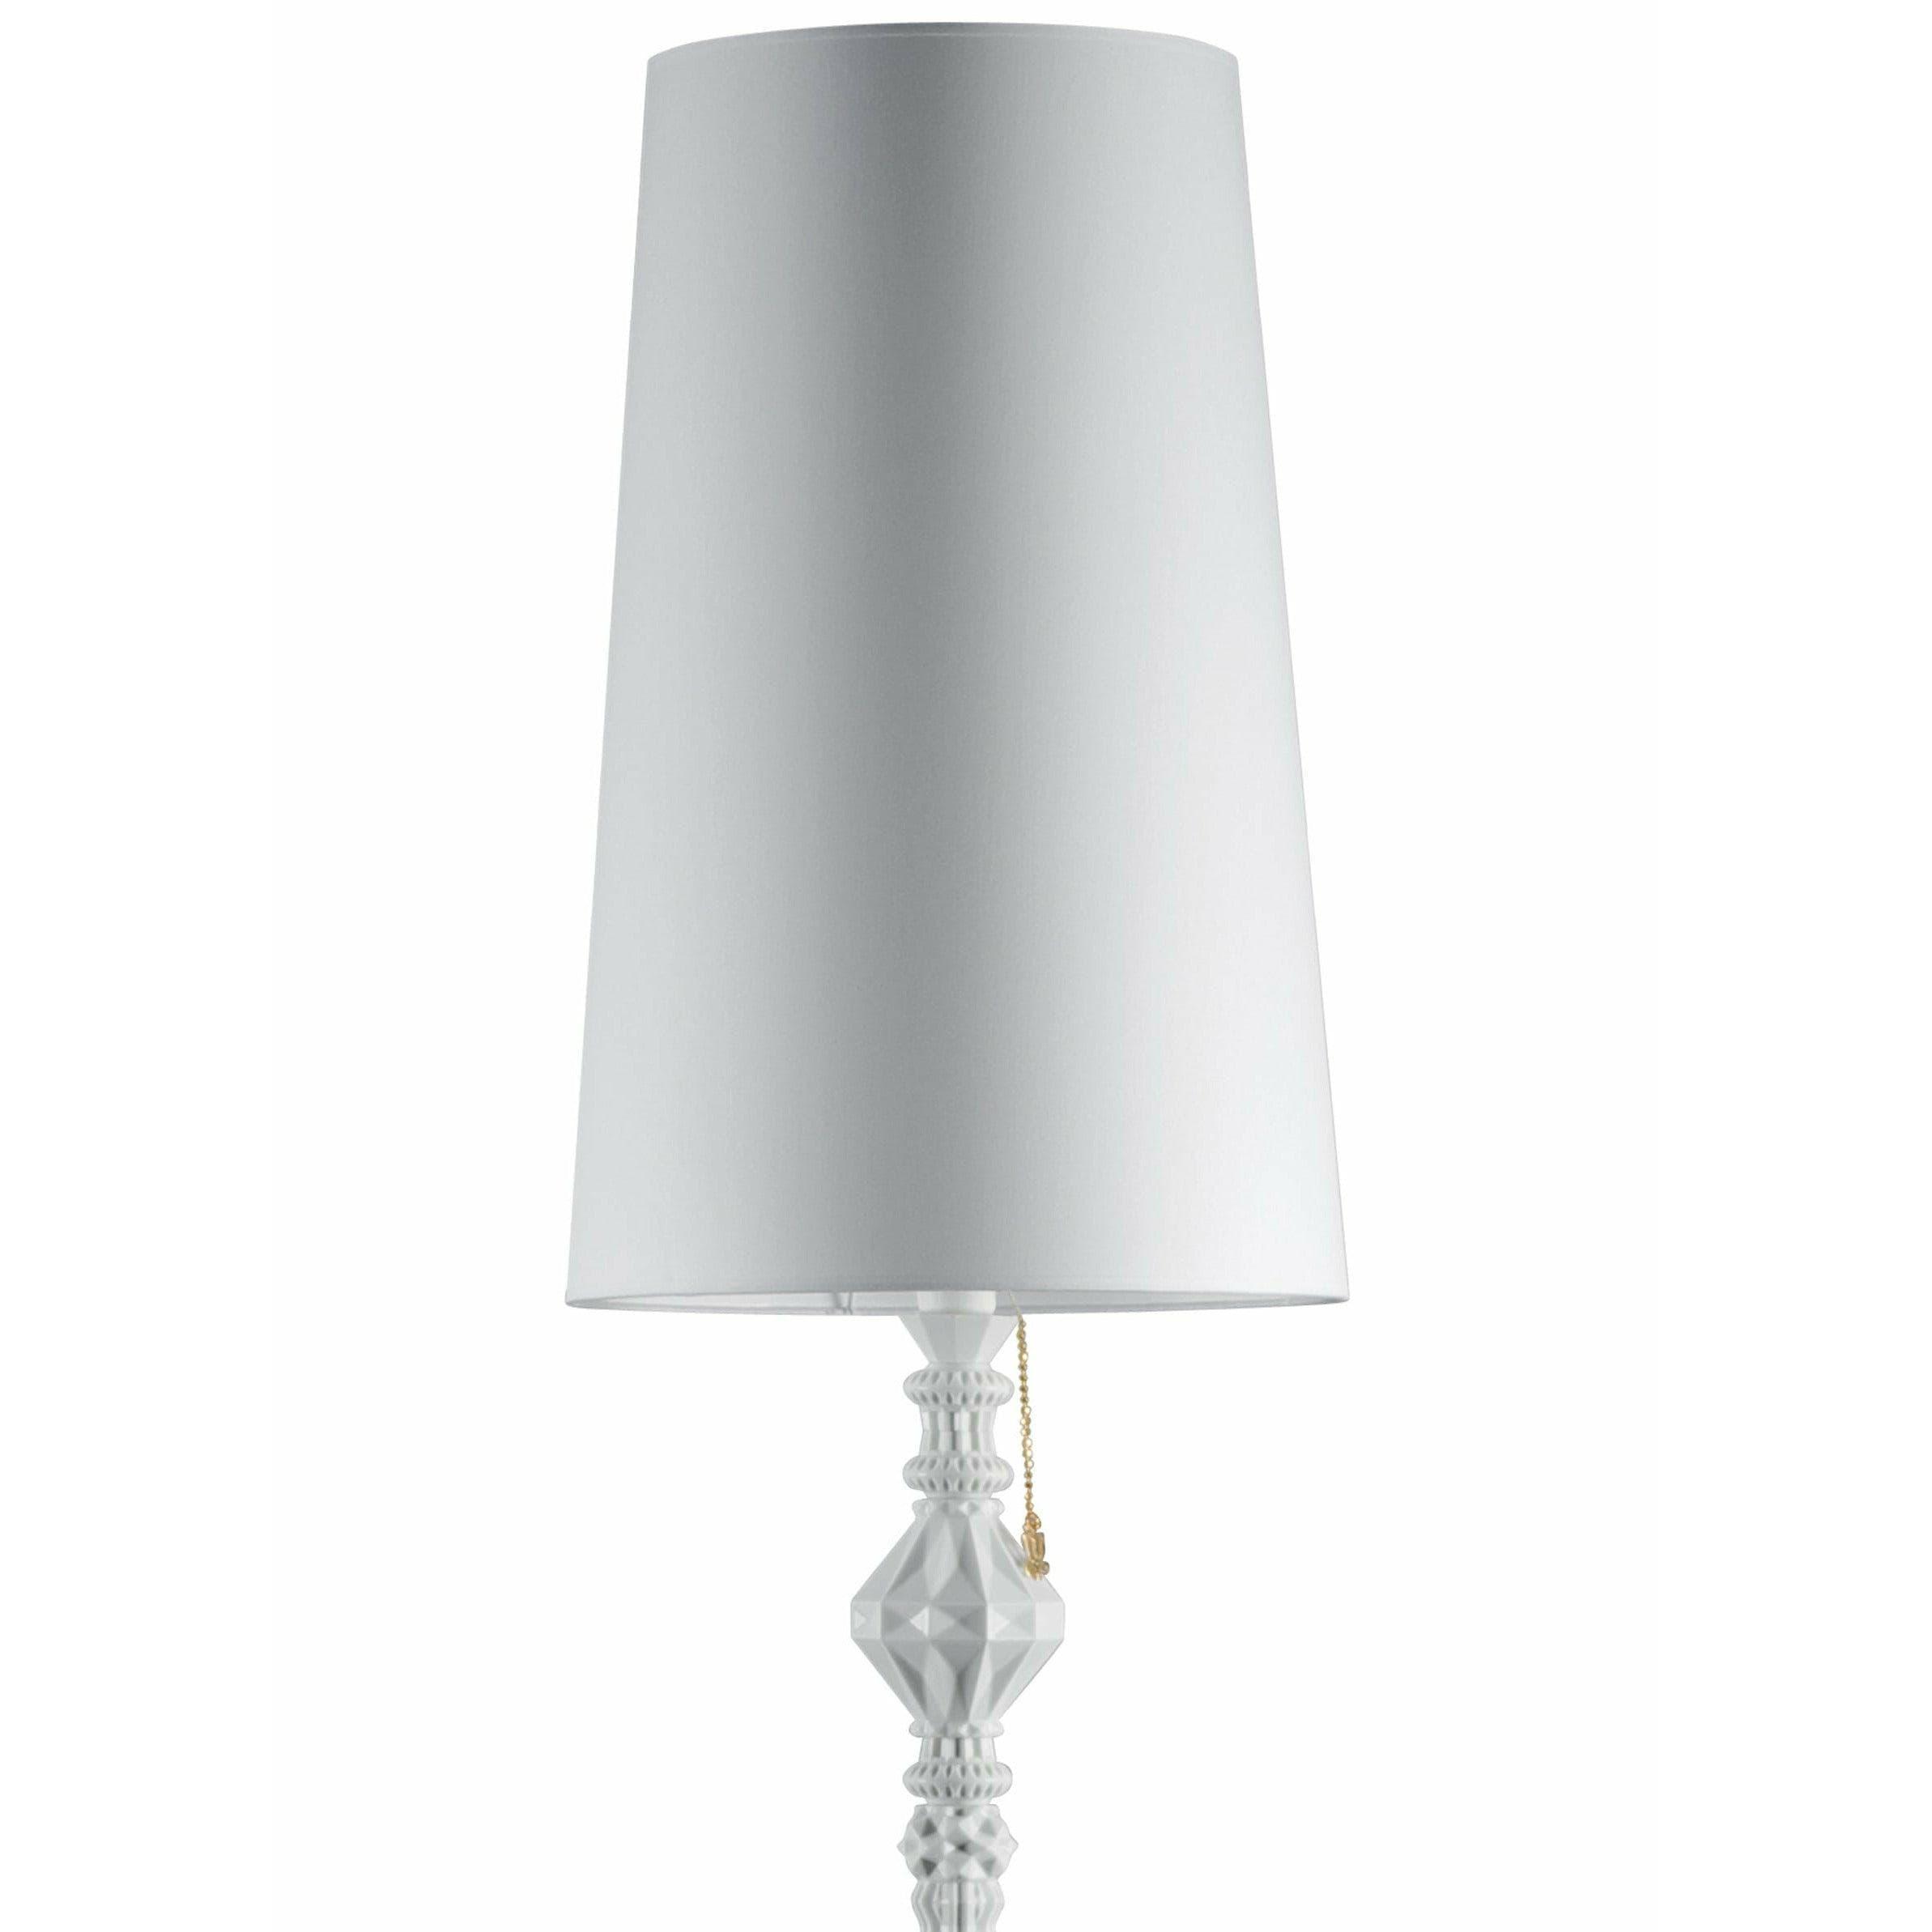 Lladro - Belle de Nuit Floor Lamp II - 01023375 | Montreal Lighting & Hardware